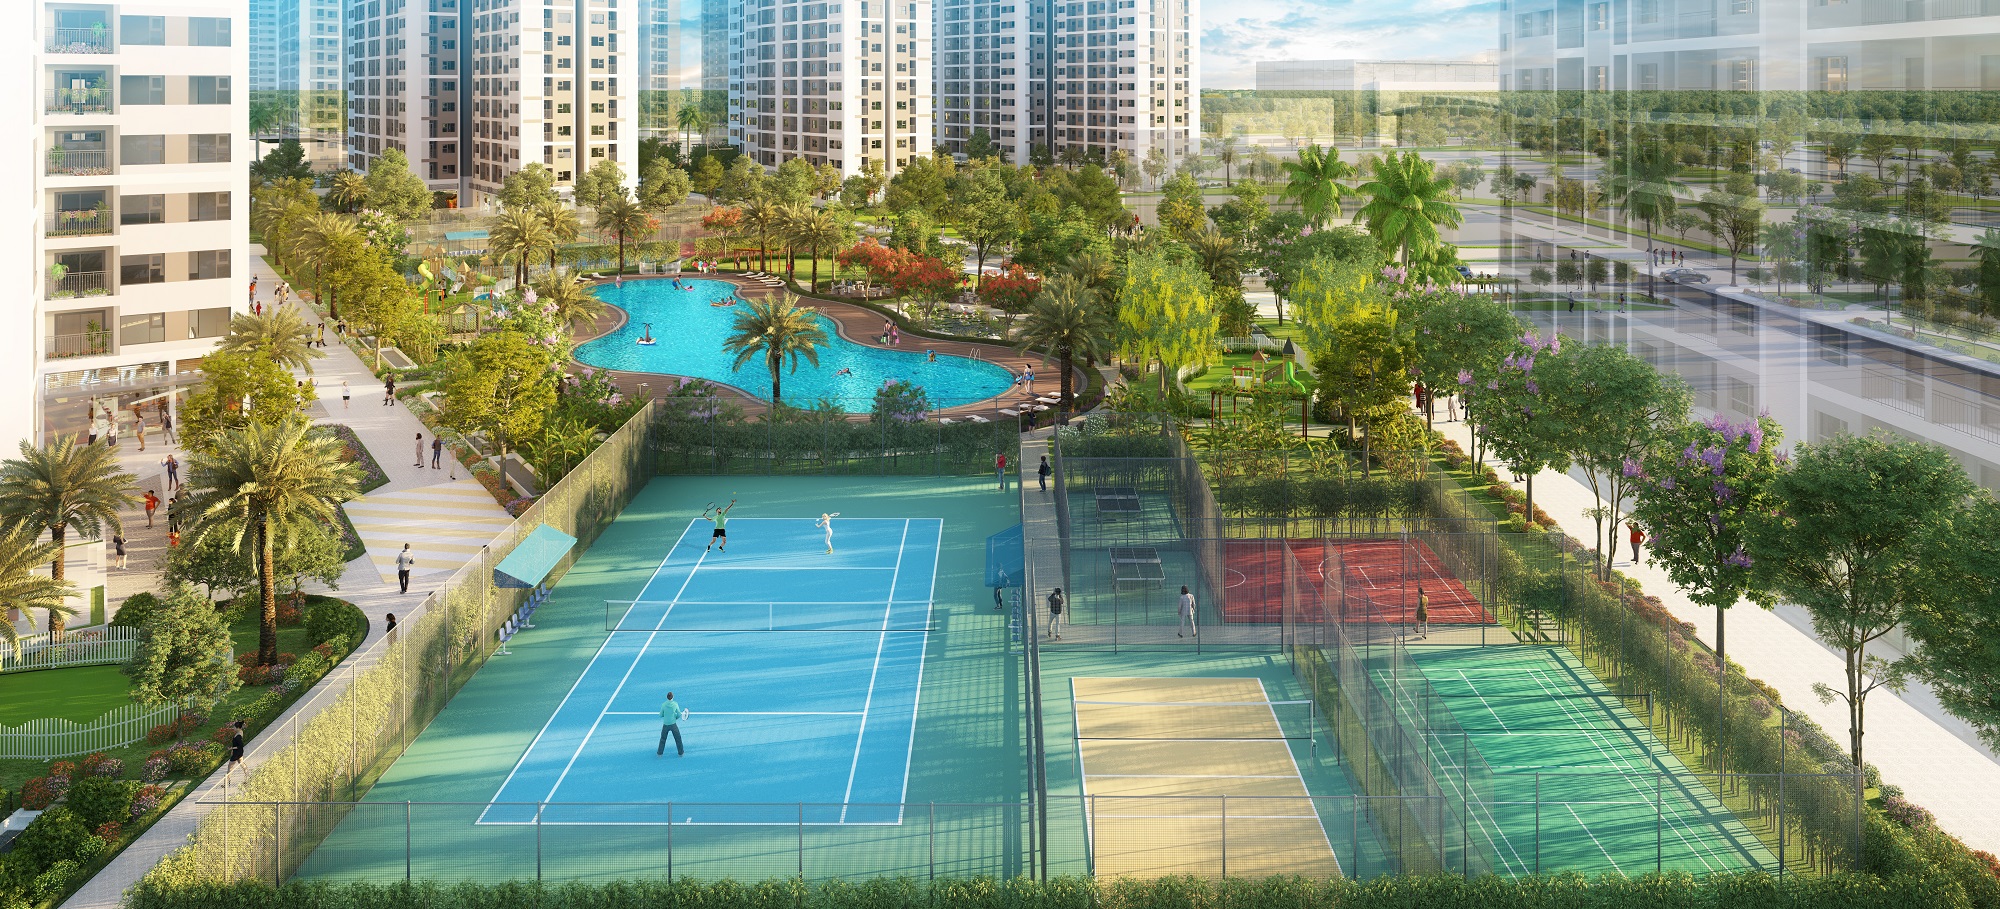 Sân chơi thể thao nằm bên cạnh bể bơi trong nội khu dự án.